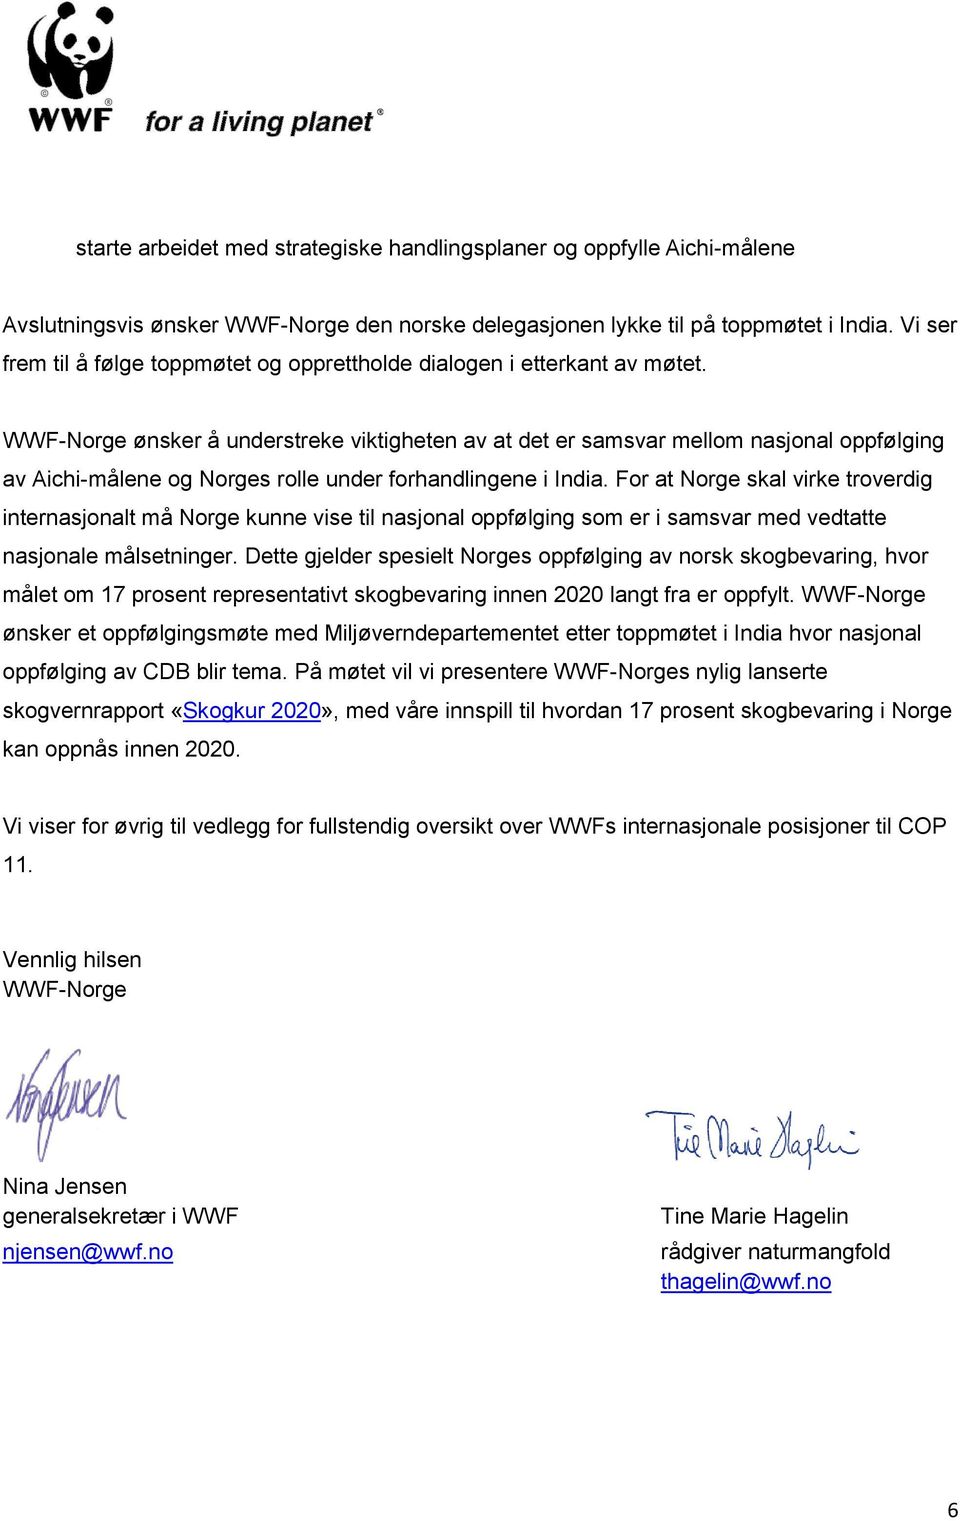 WWF-Norge ønsker å understreke viktigheten av at det er samsvar mellom nasjonal oppfølging av Aichi-målene og Norges rolle under forhandlingene i India.